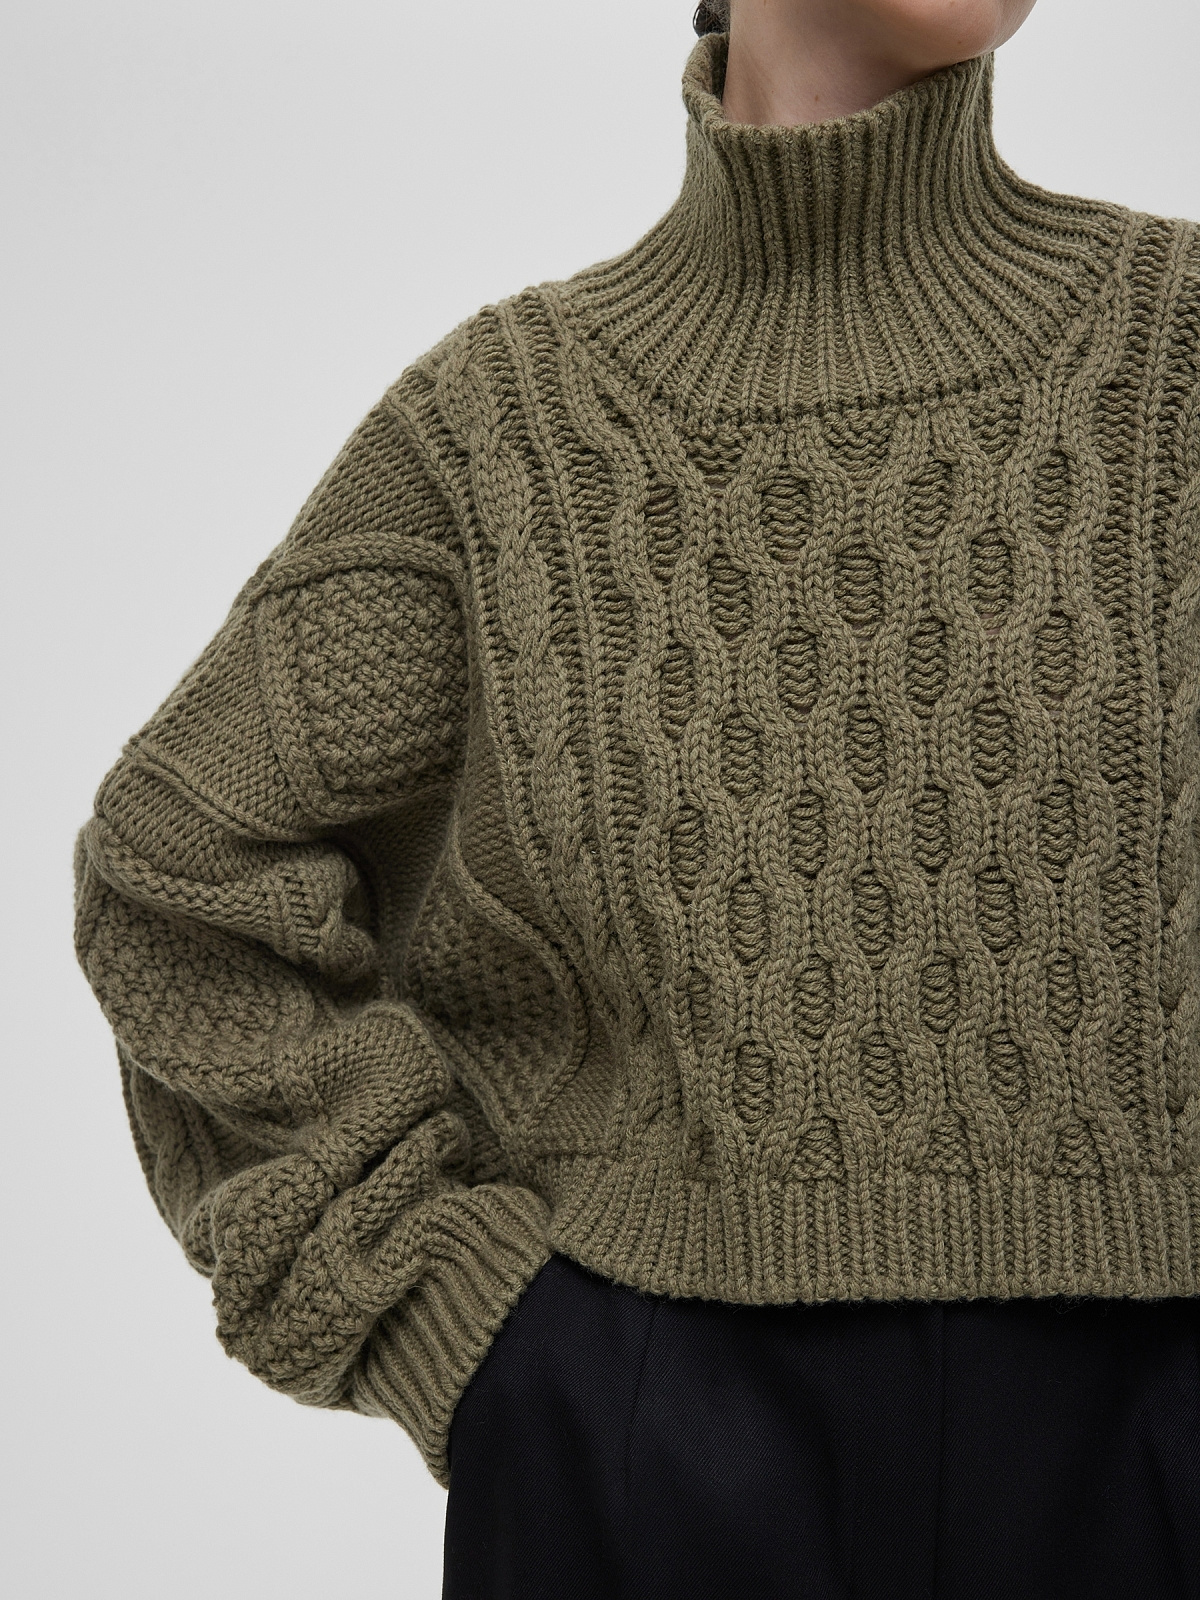 Кроп-свитер крупной вязки с аранами, светлый хаки